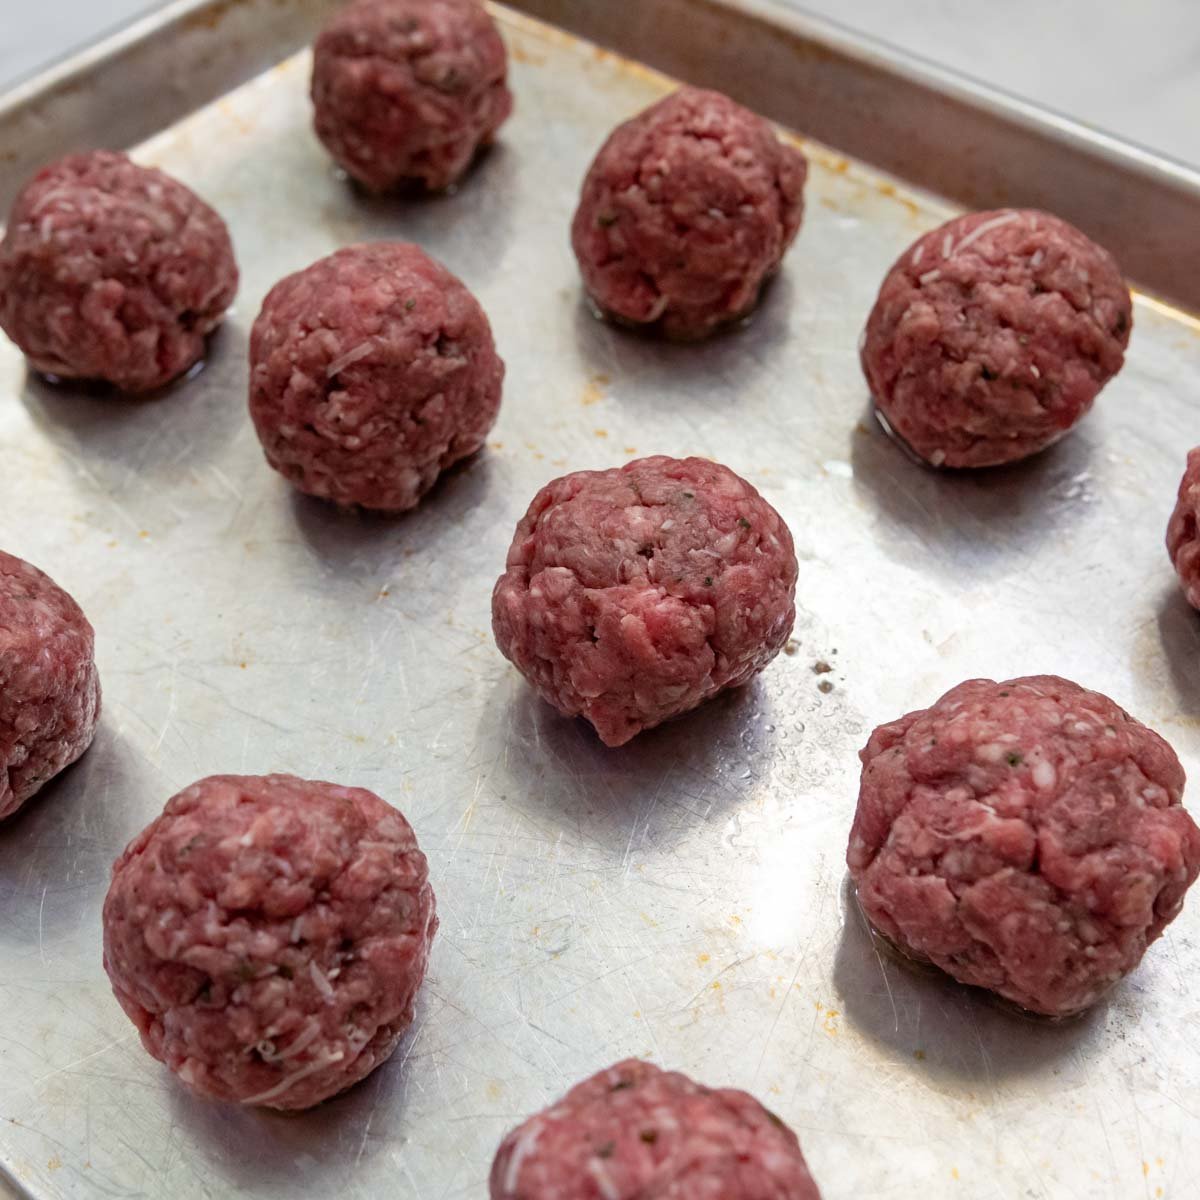 unbaked meatballs.